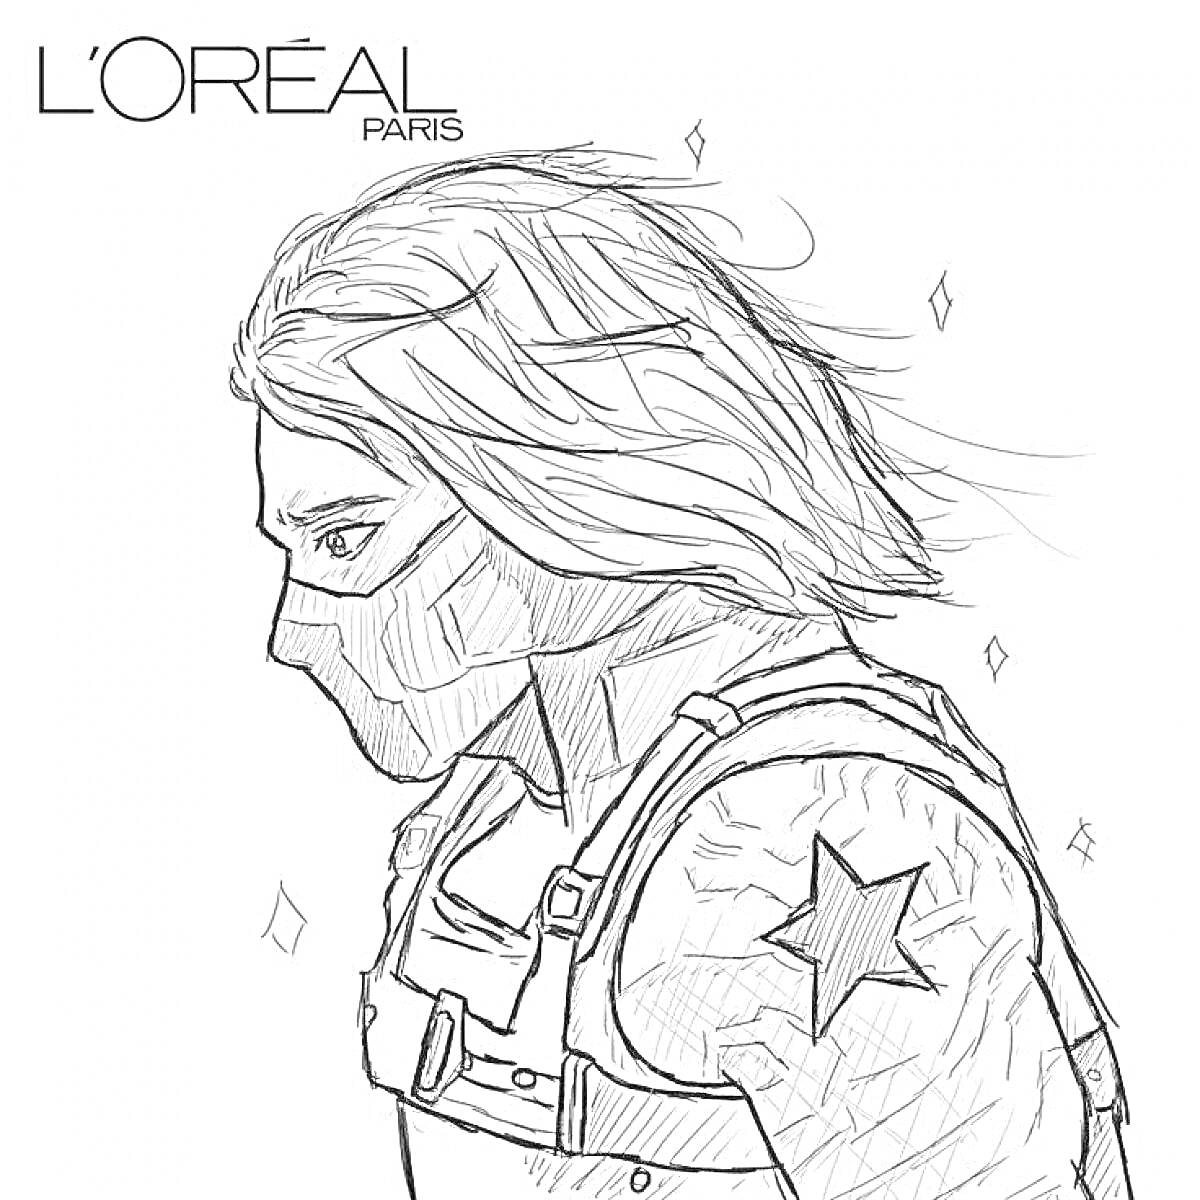 Портрет персонажа с длинными волосами и маской, звездой на плече и ремнями, логотип L'Oréal Paris в углу